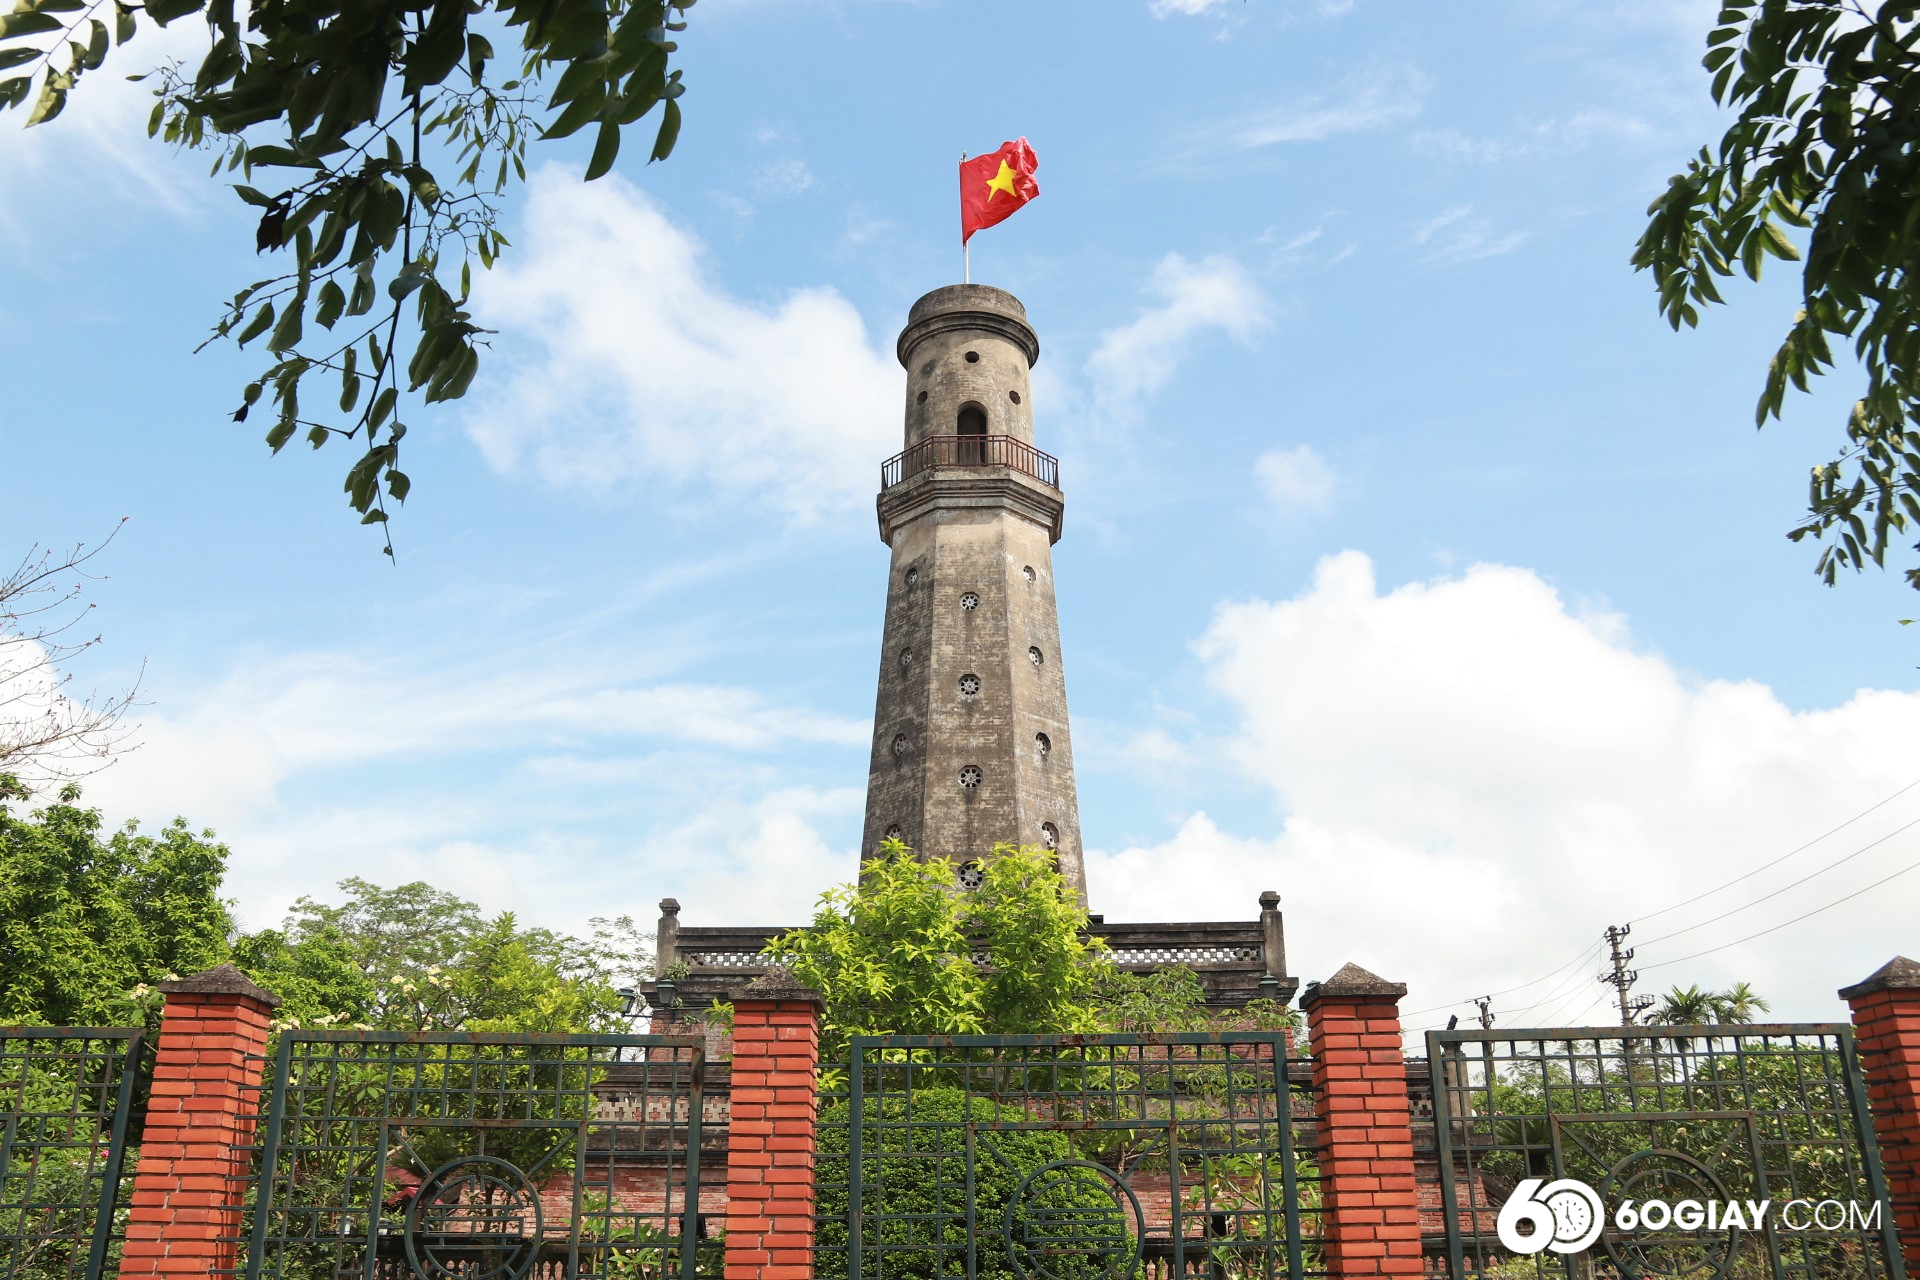 Với ý nghĩa lịch sử, văn hóa và giá trị kiến trúc, năm 1962, Bộ VH-TT (nay là Bộ VH, TT và DL) đã xếp hạng Cột cờ Nam Định là di tích lịch sử - văn hóa cấp quốc gia.